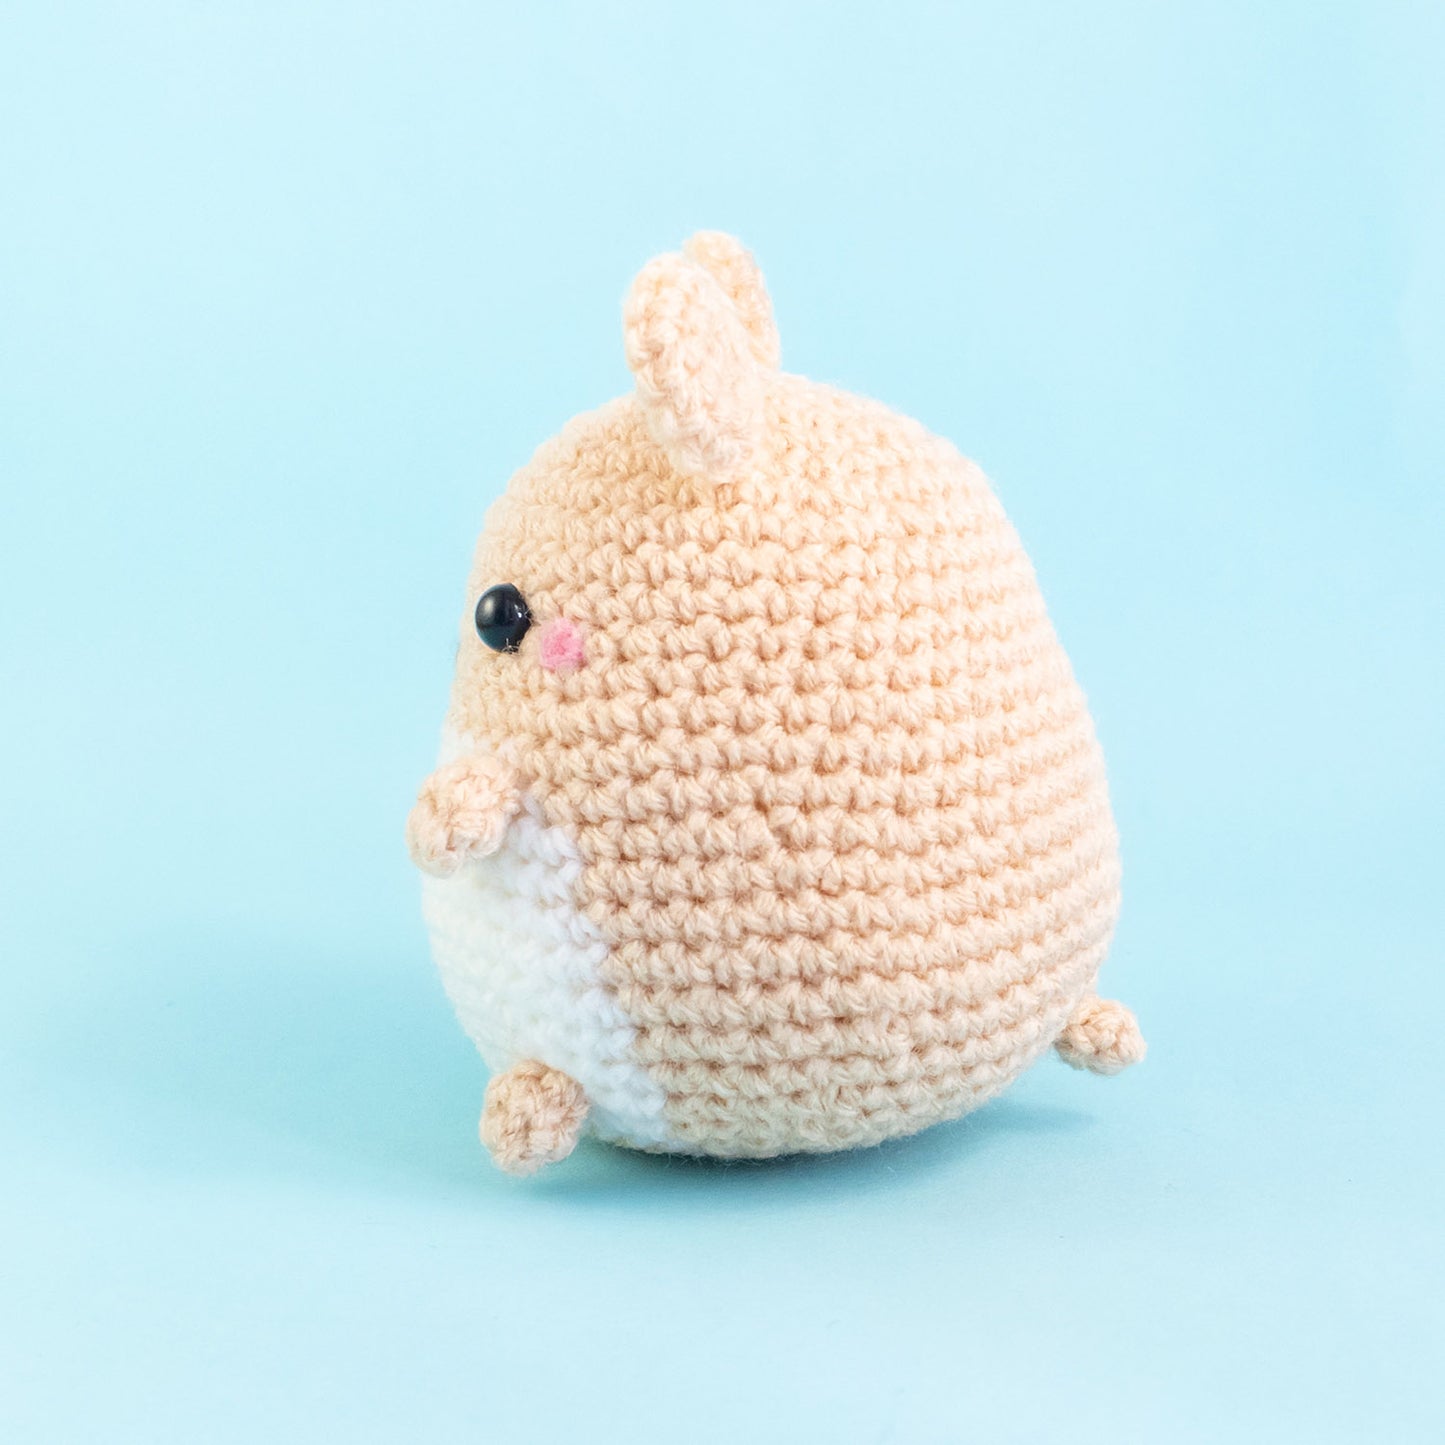 Stuffed Hamster Plush for hamster lover gift